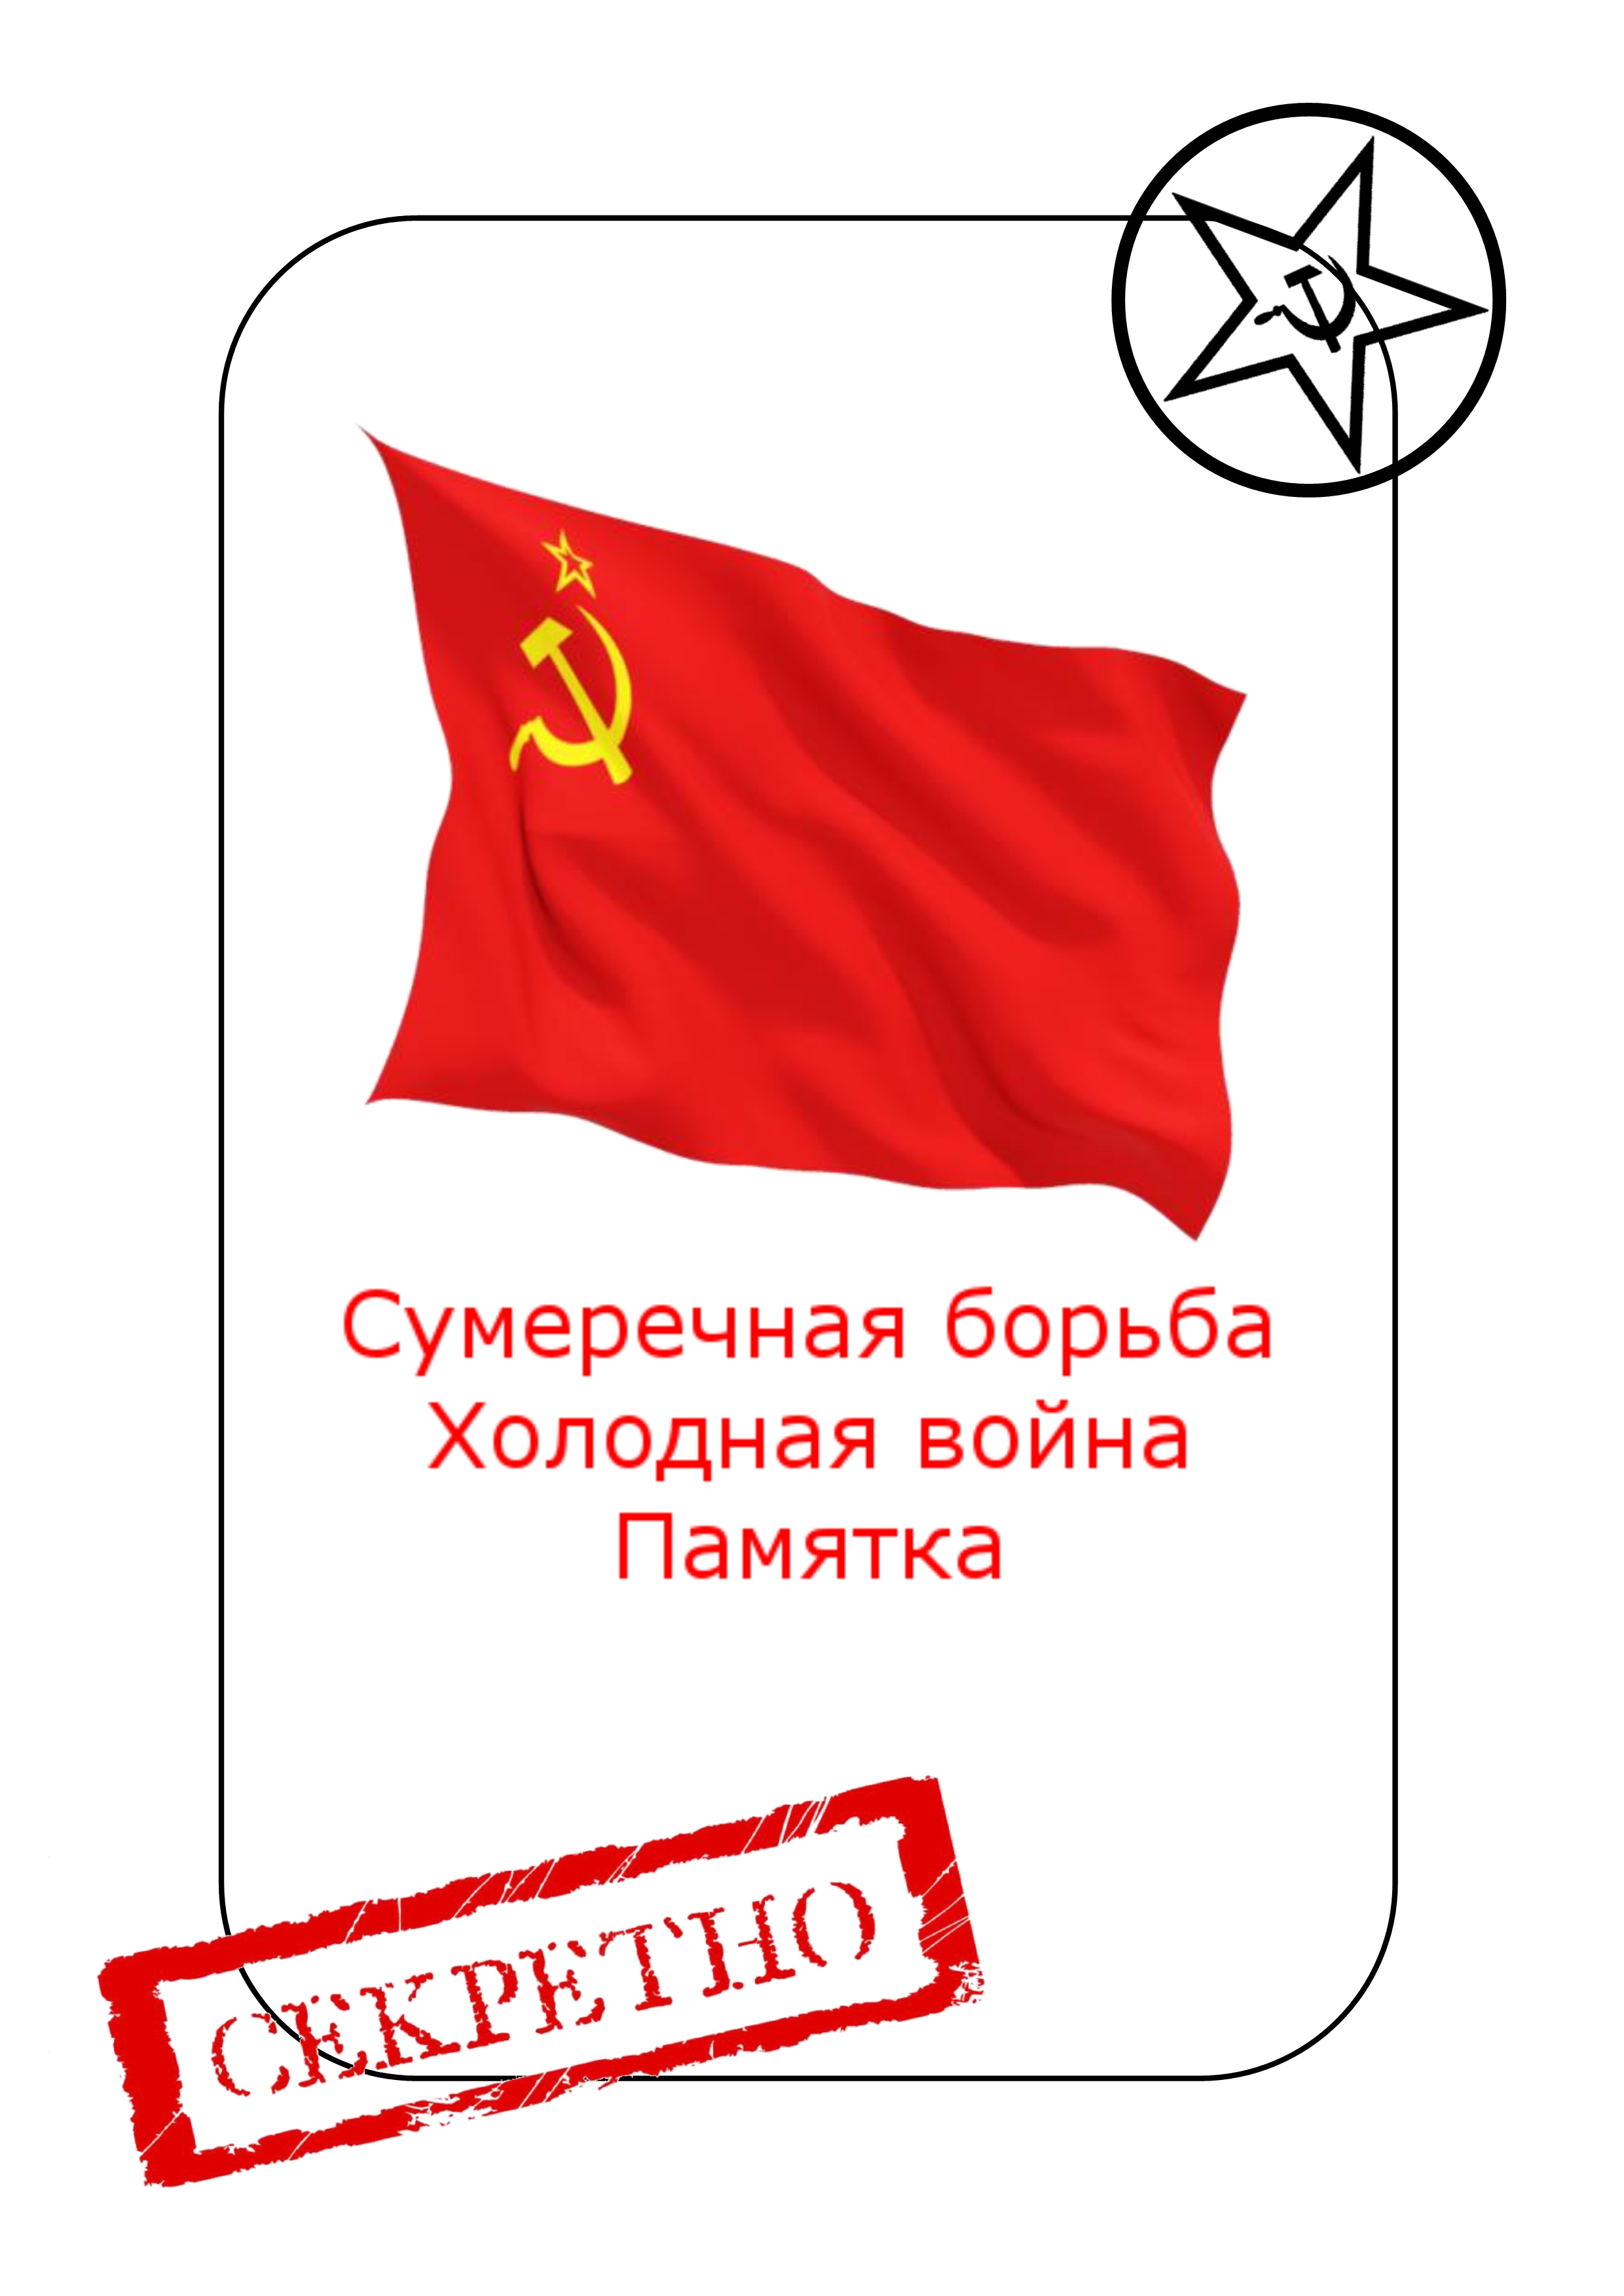 トワイライトストラグルのプレイヤーエイド（USSR）